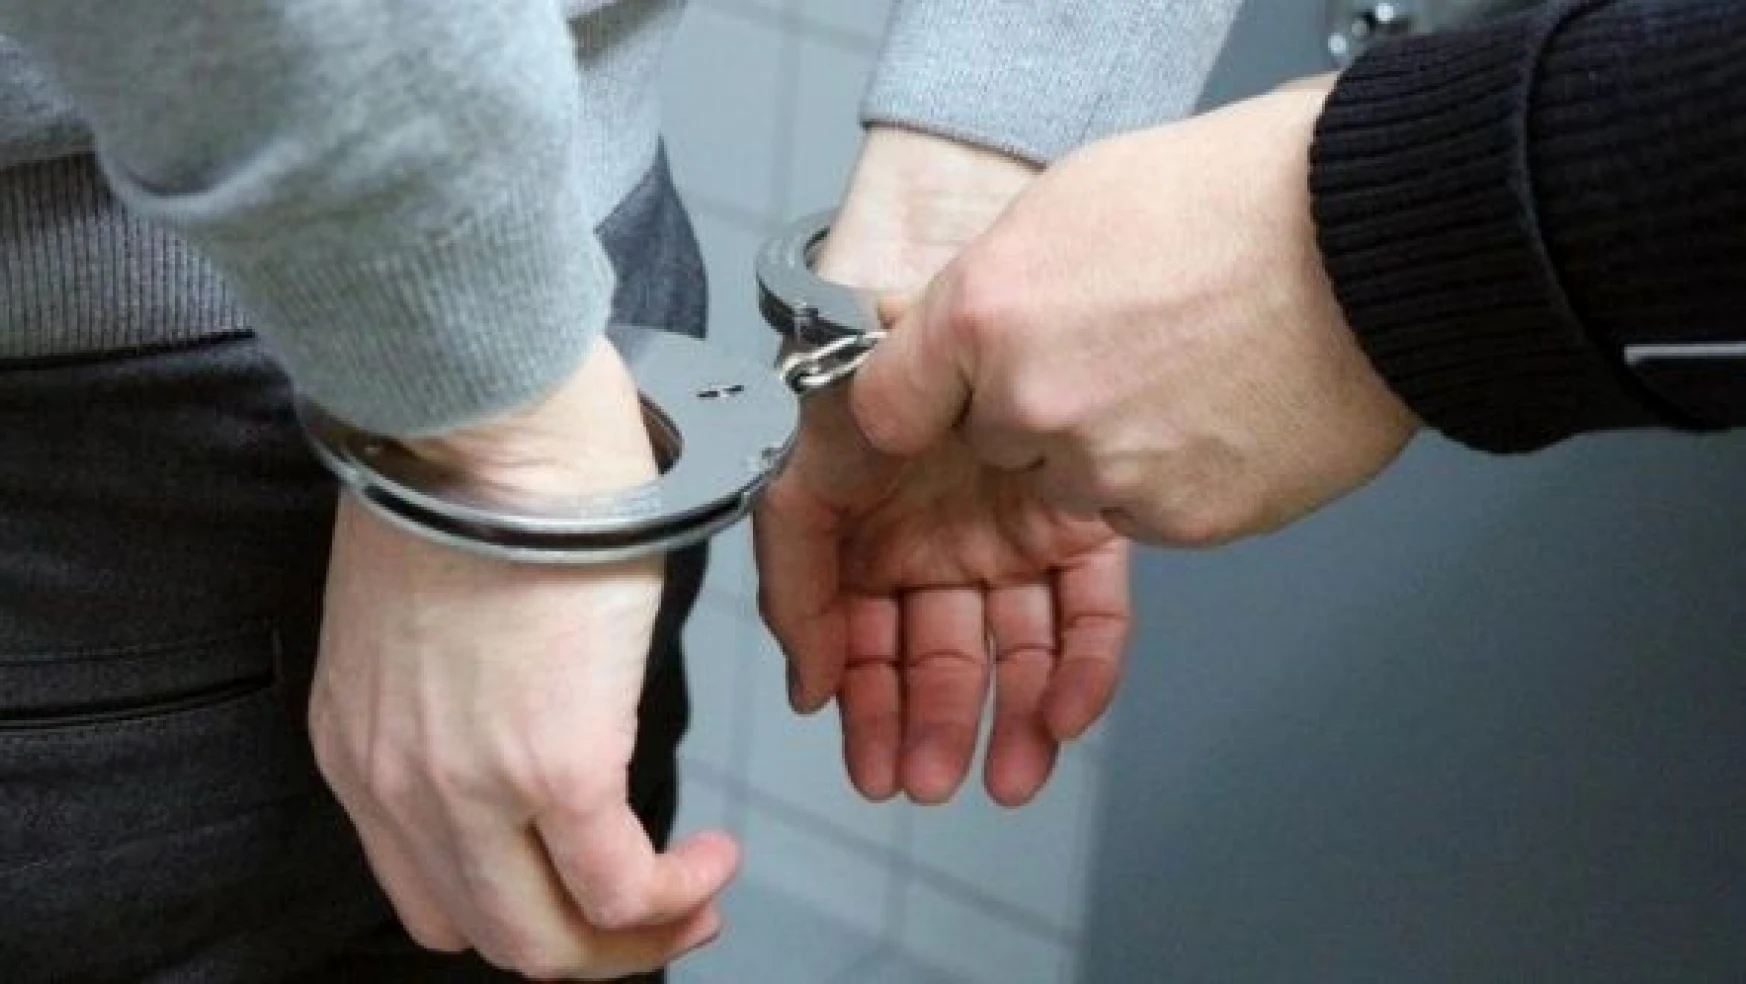 Iğdır'da 3 kişi hırsızlık yaptıkları iddiasıyla tutuklandı